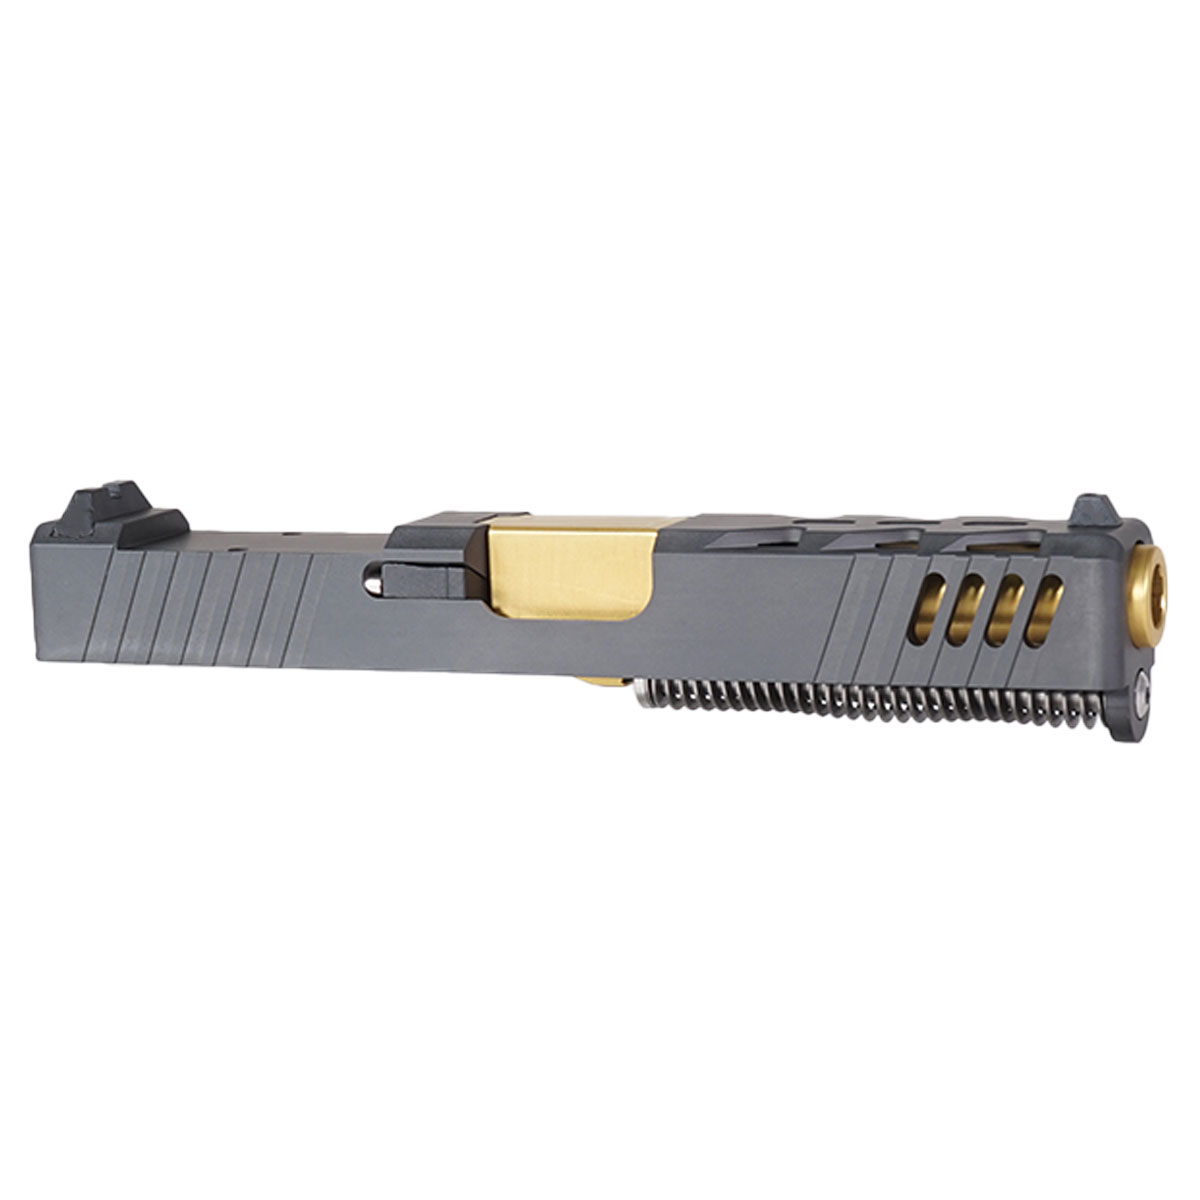 DDS 'High Ground' 9mm Complete Slide Kit - Glock 19 Gen 1-3 Compatible